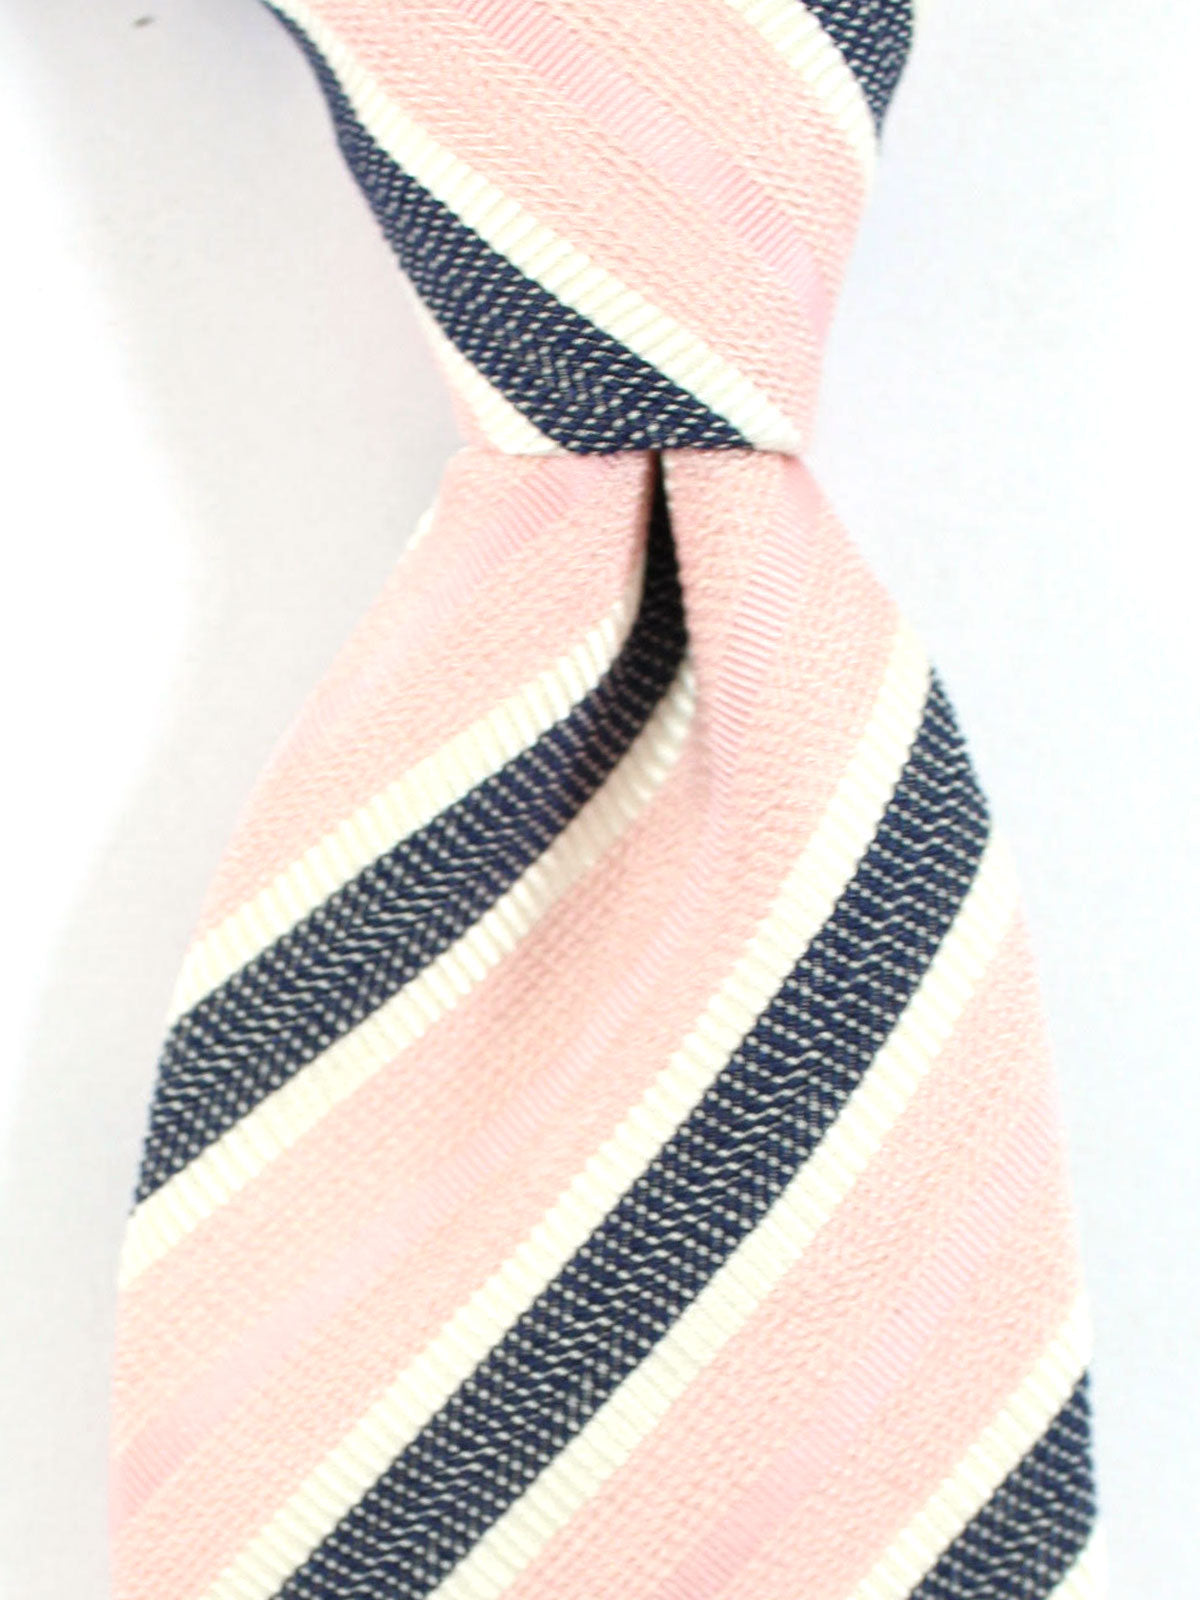 Ermenegildo Zegna Silk Necktie Dark Blue Pink White Stripes